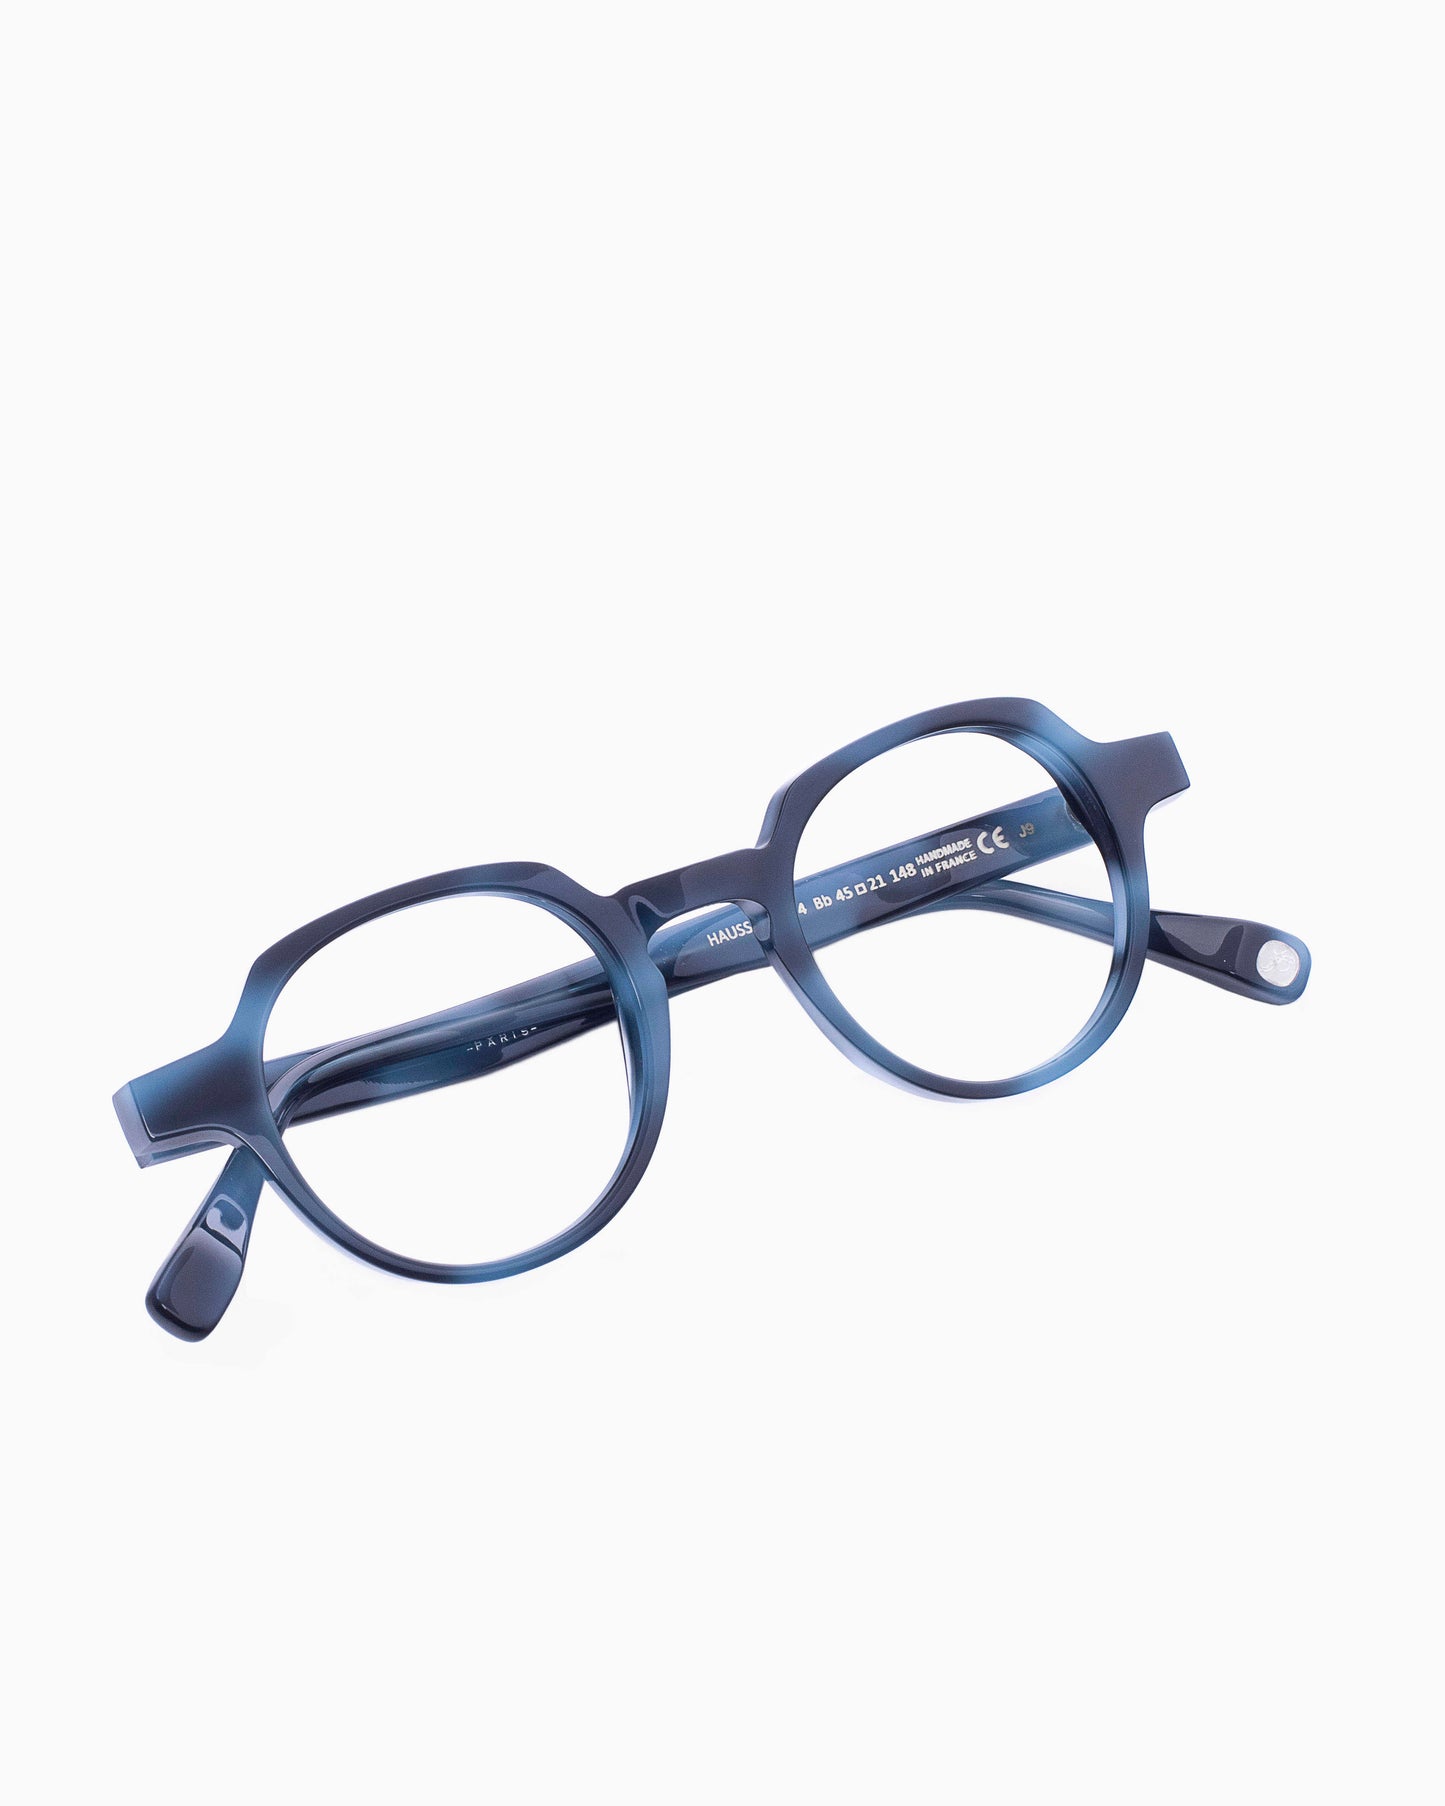 Francois Pinton - Haussmann4 - Bb | Bar à lunettes